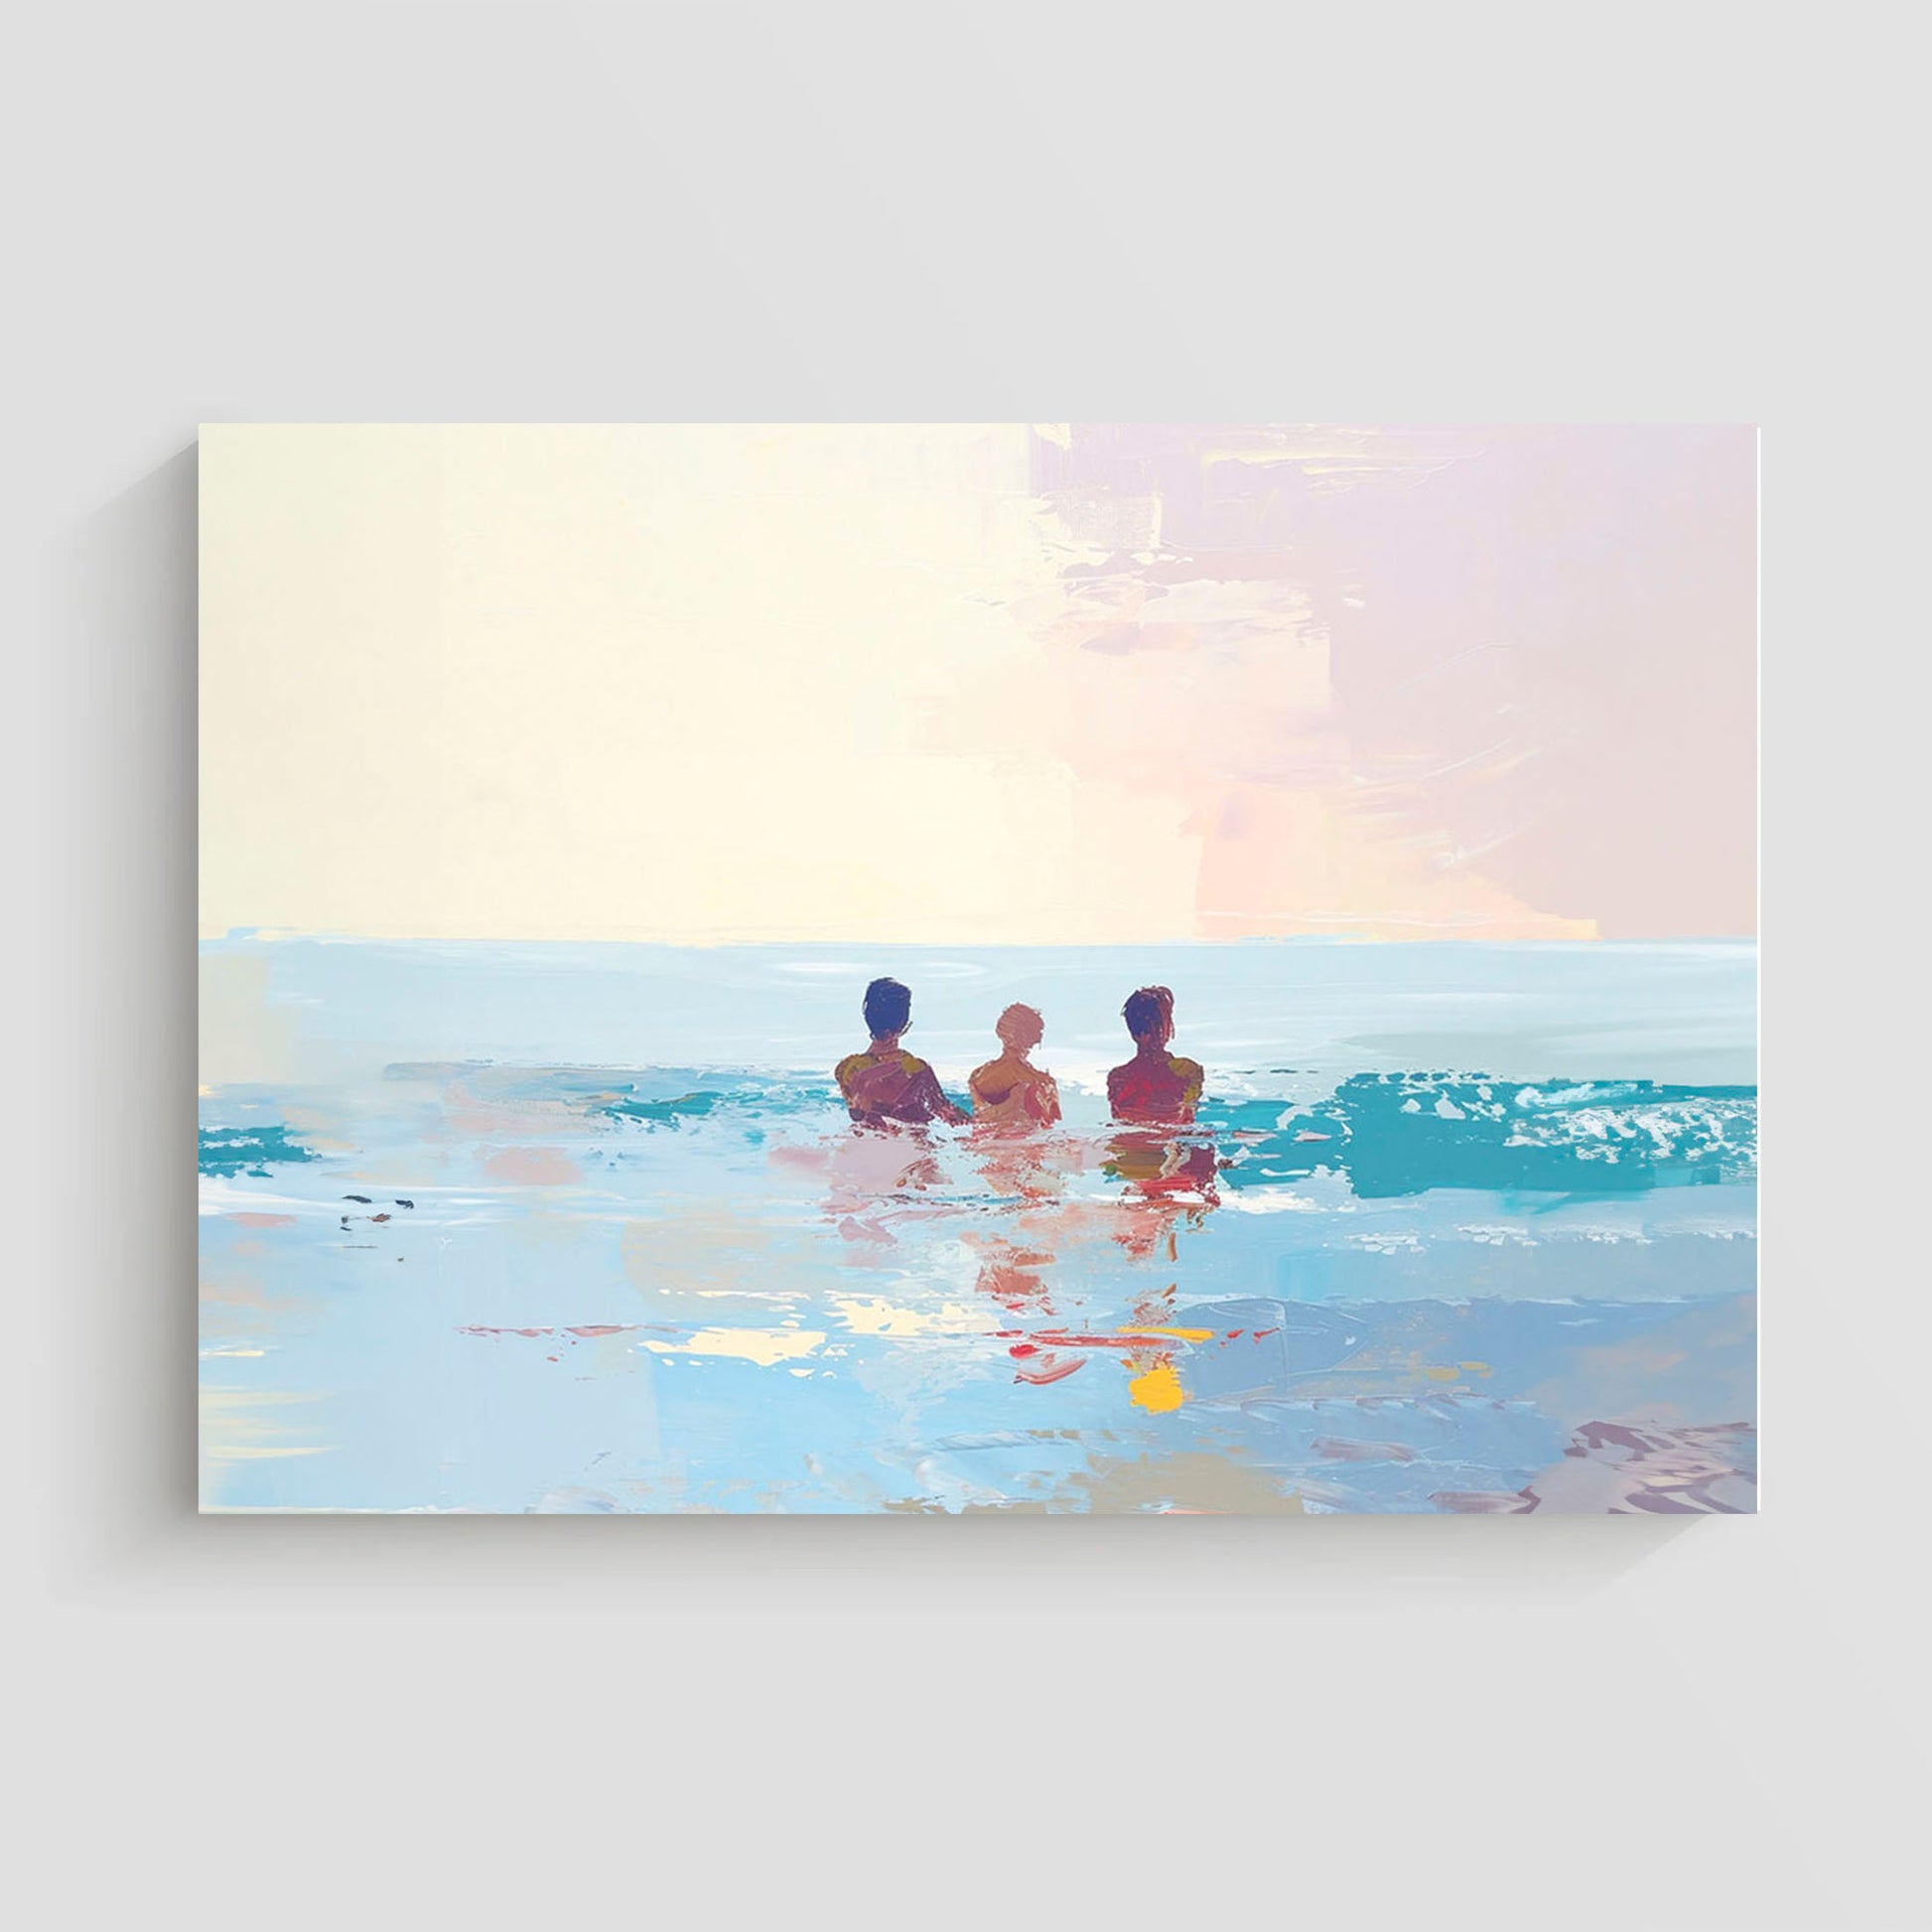 Pintura de tres personas relajándose en el mar bajo un cielo pastel.